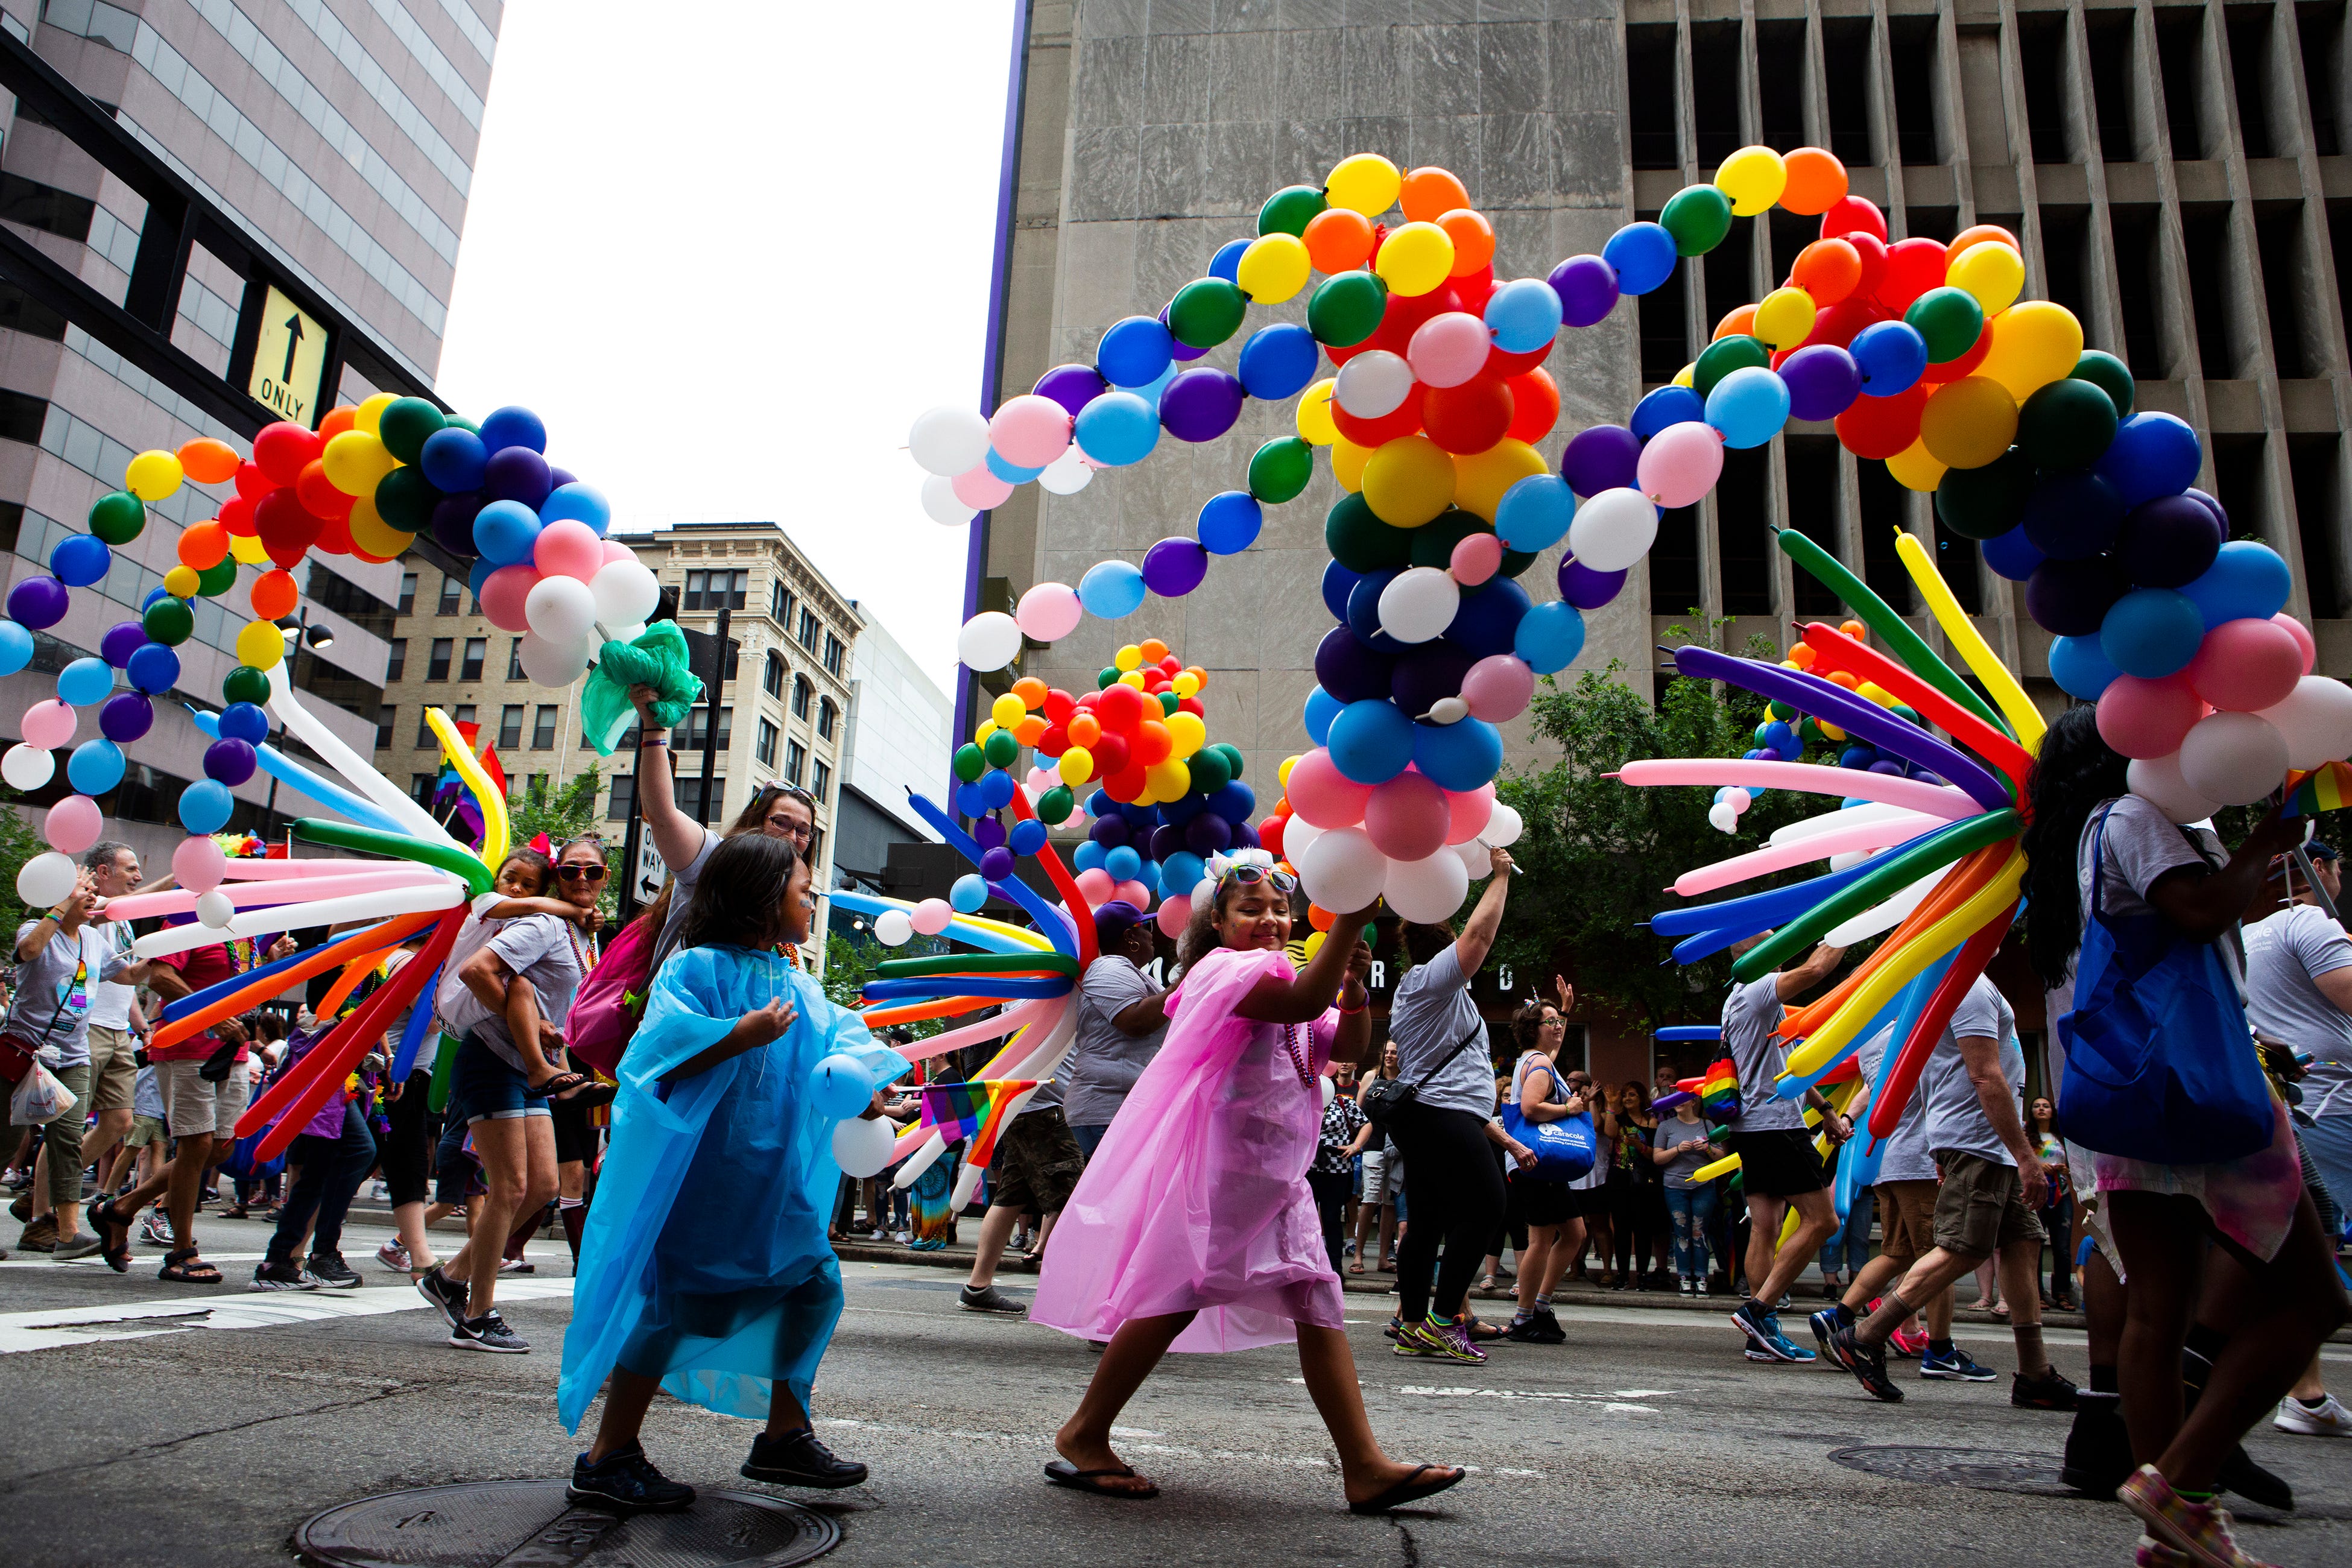 Gallery: See photos from the Cincinnati Pride Parade 2019